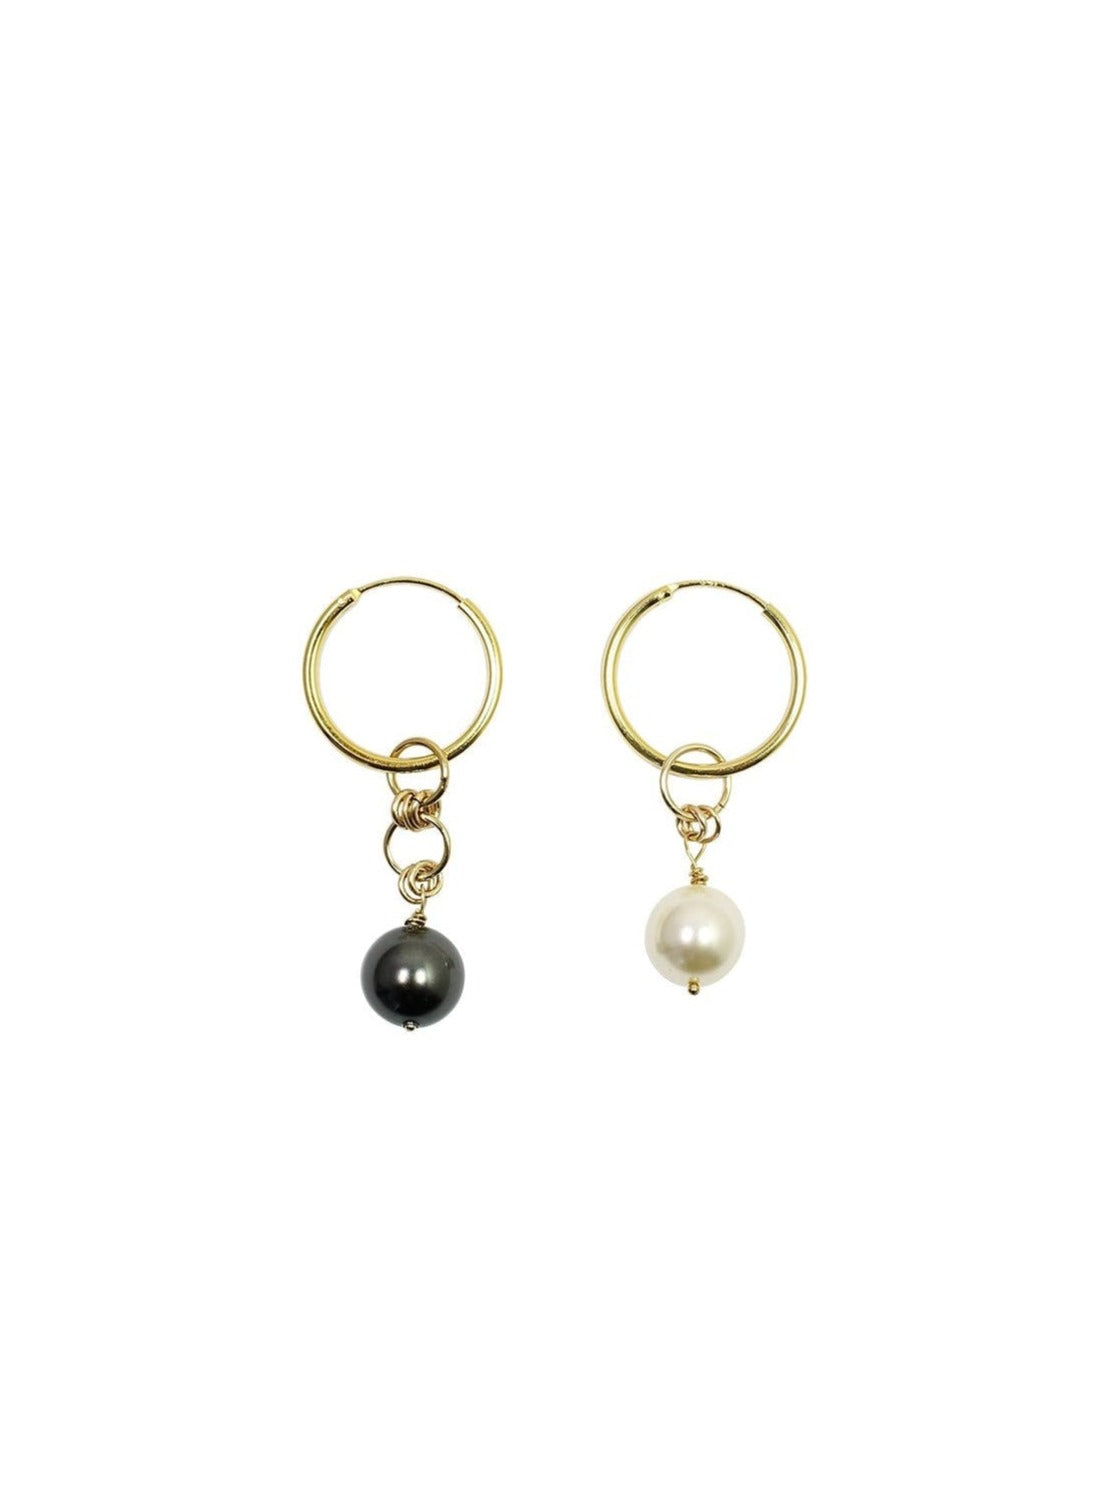 Hoop earrings with swarovski pearls black and white